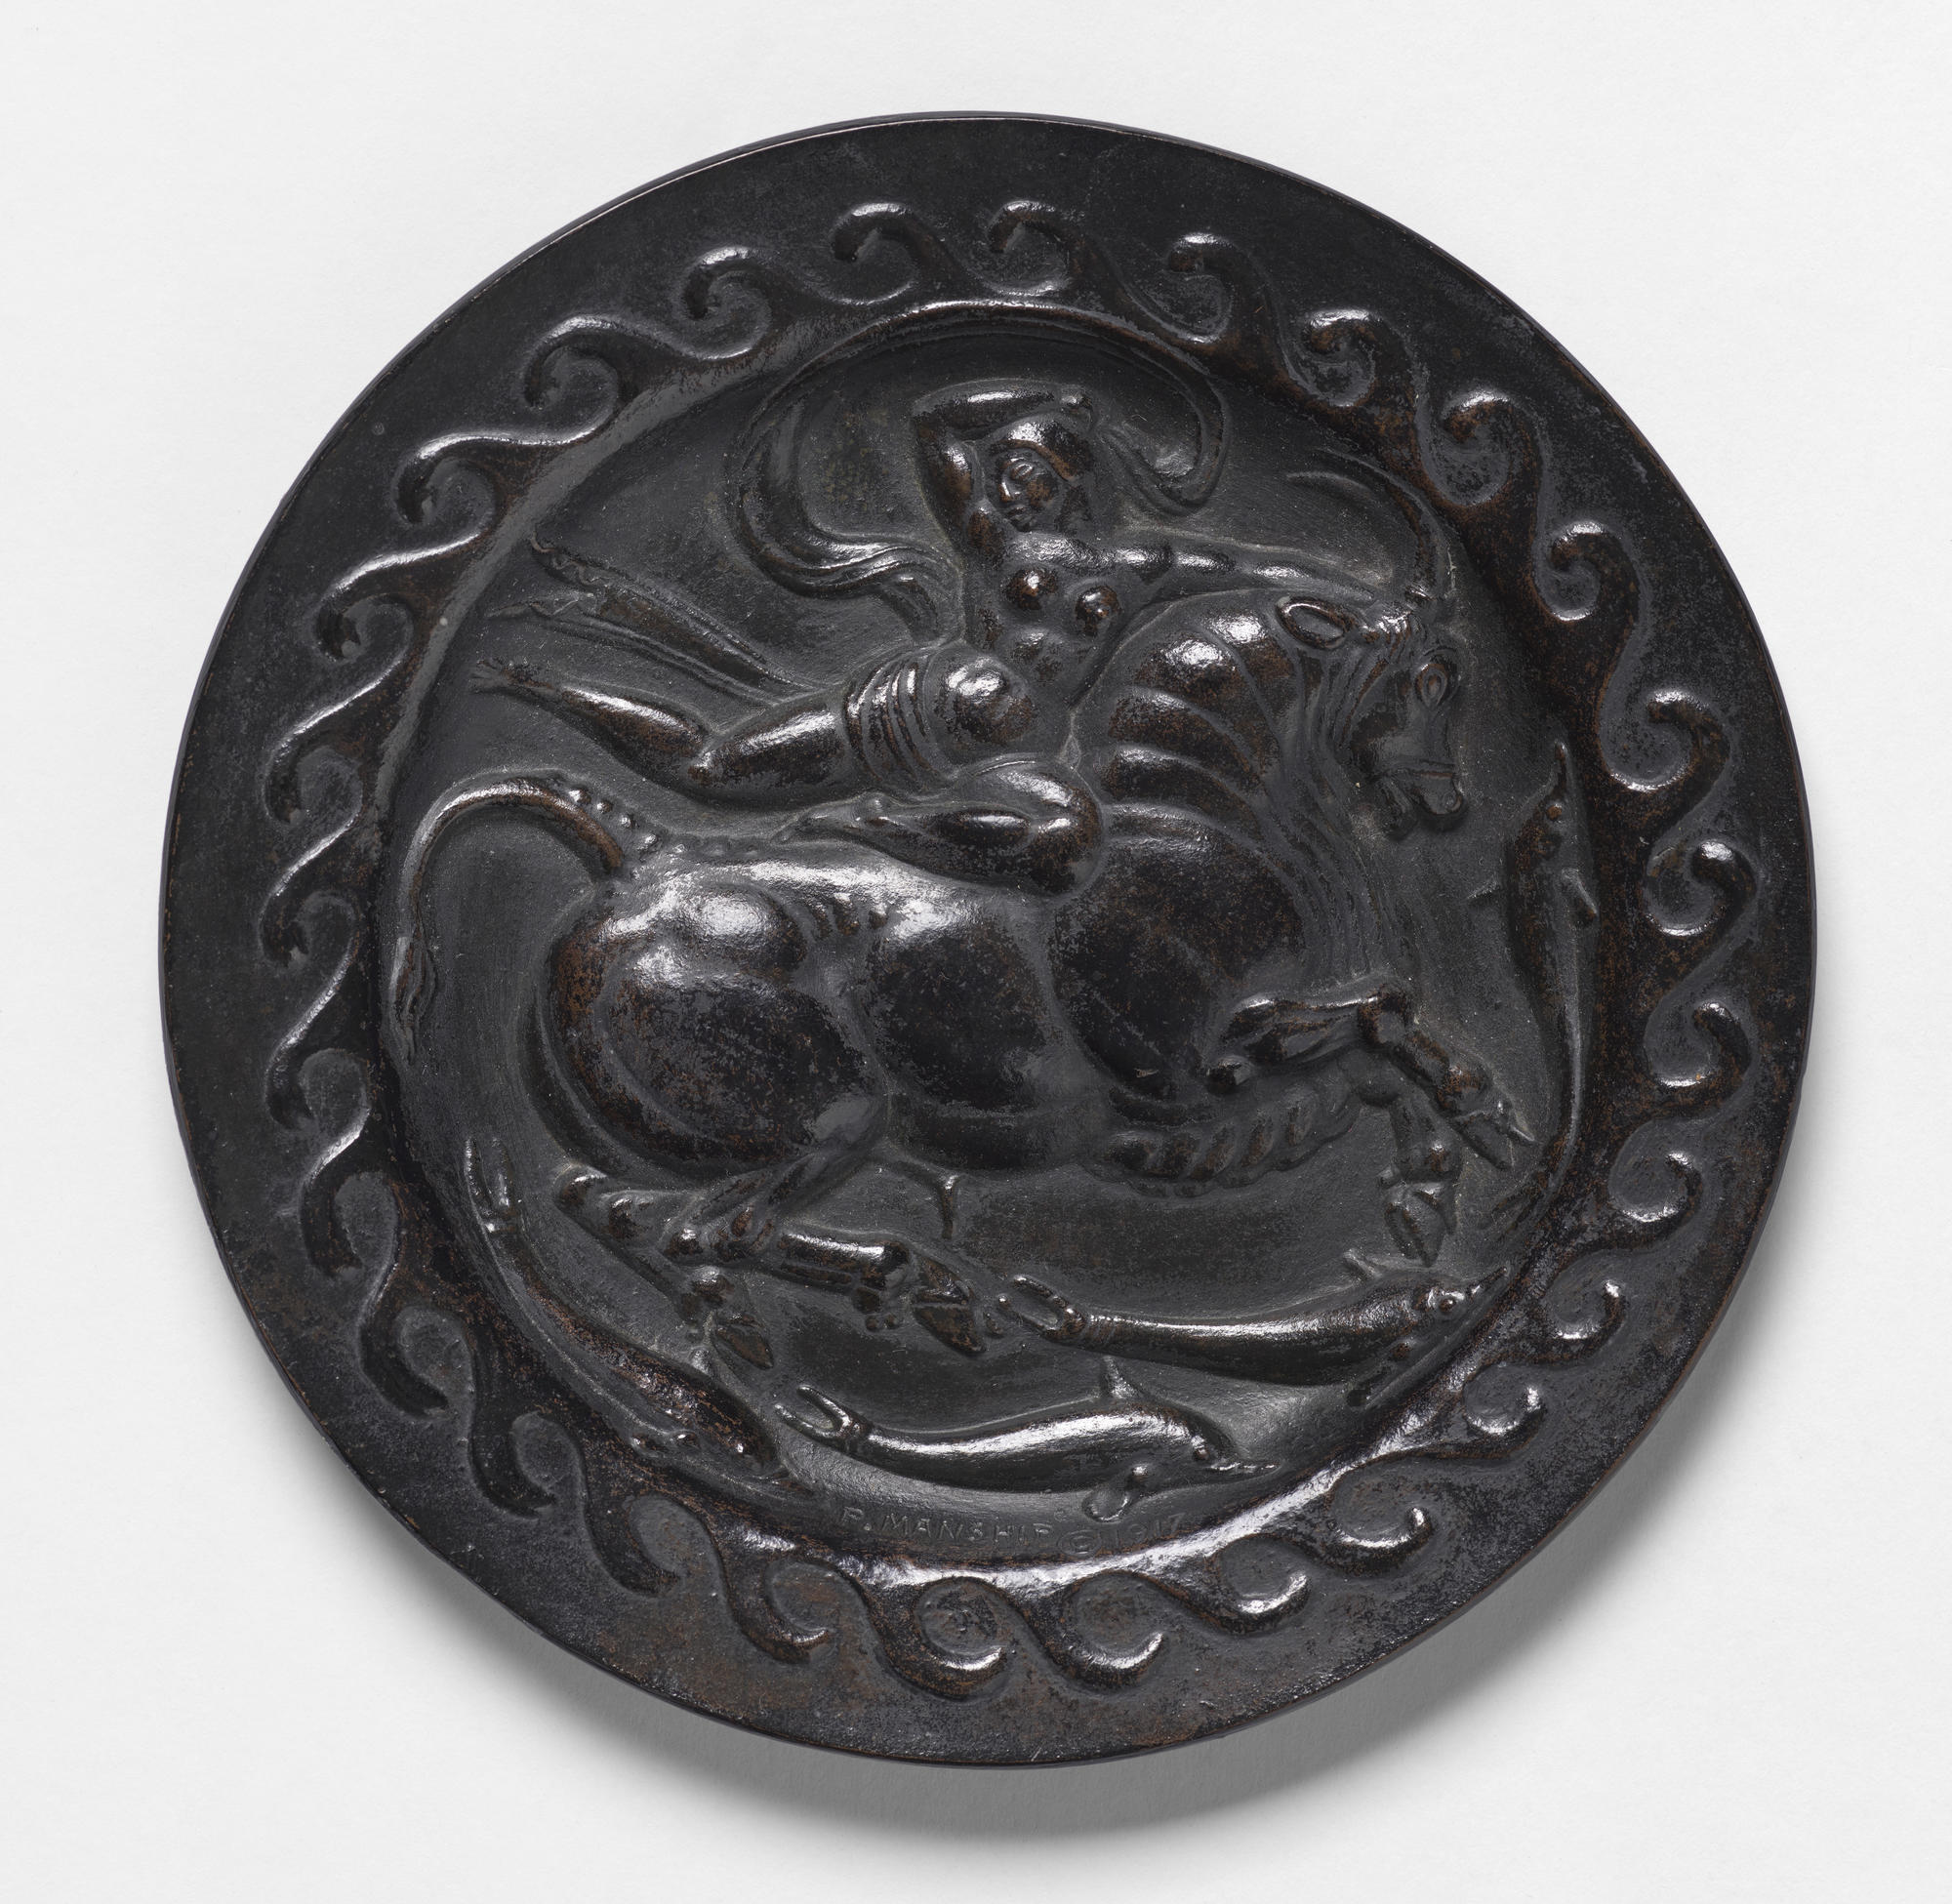 A circular bronze relief portraying Europa on a horse.